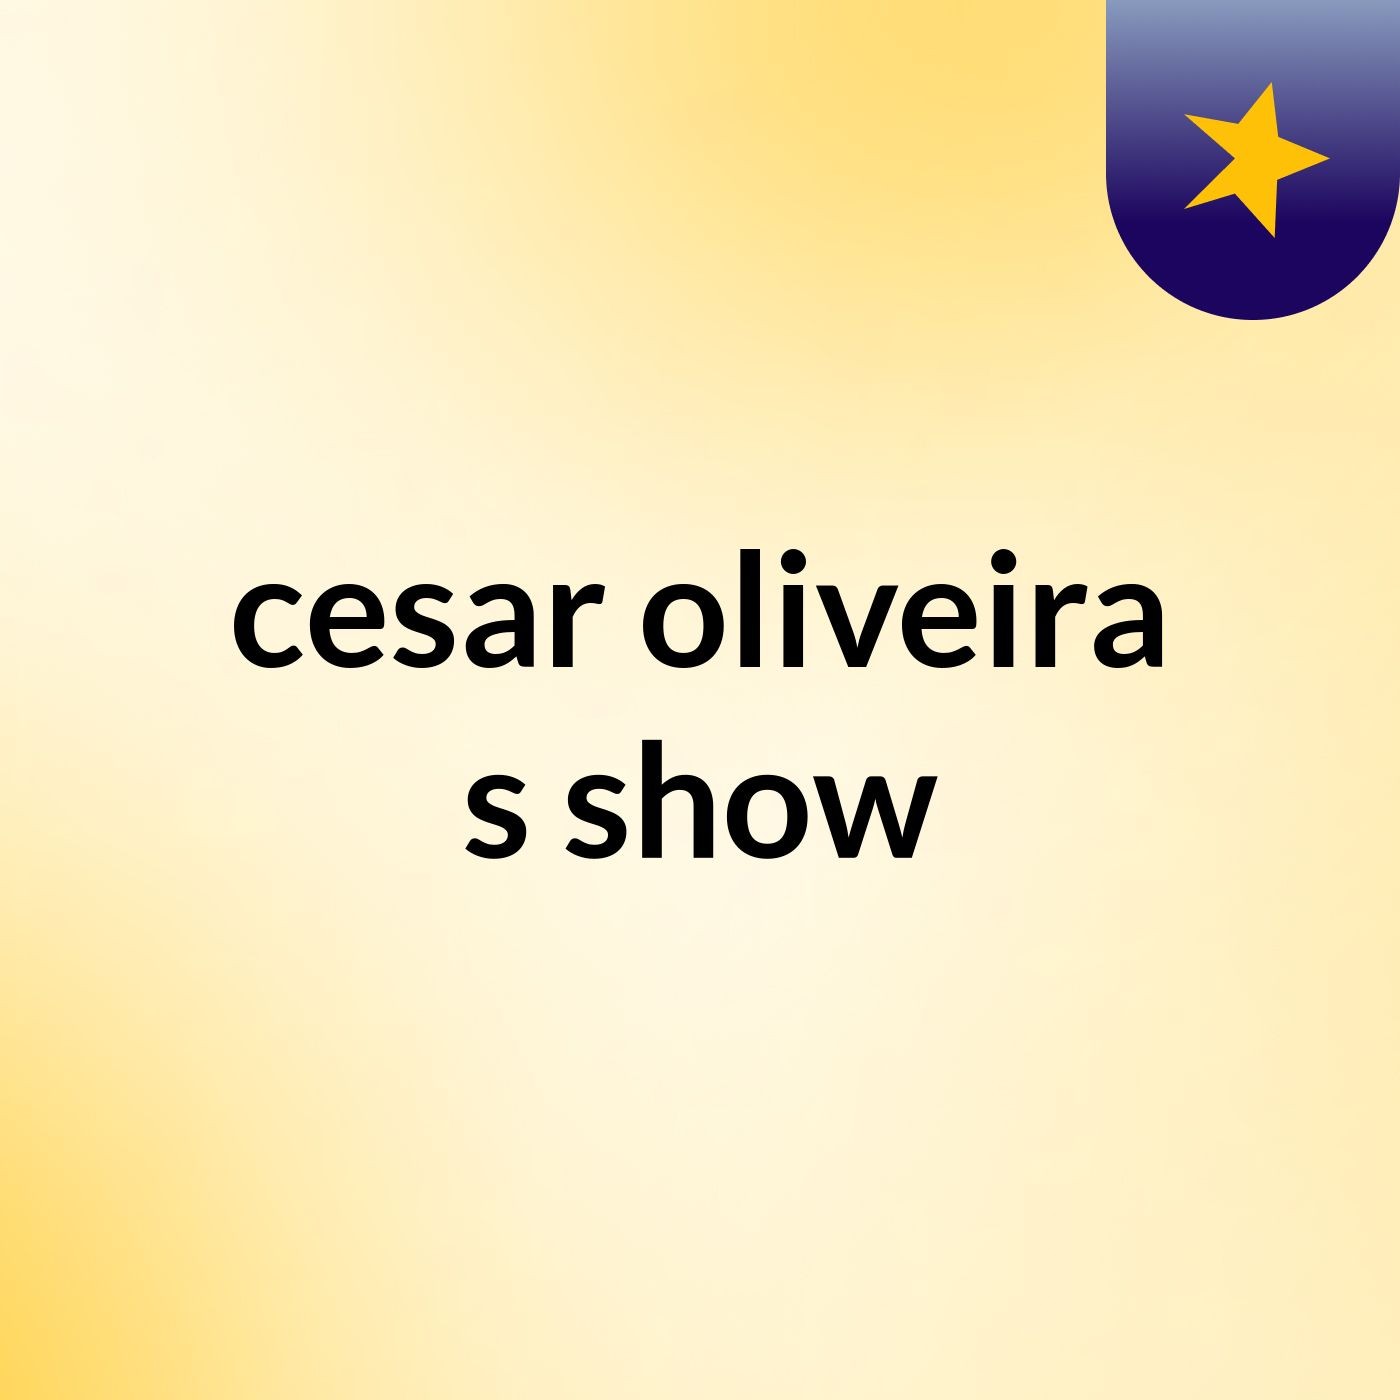 cesar oliveira's show